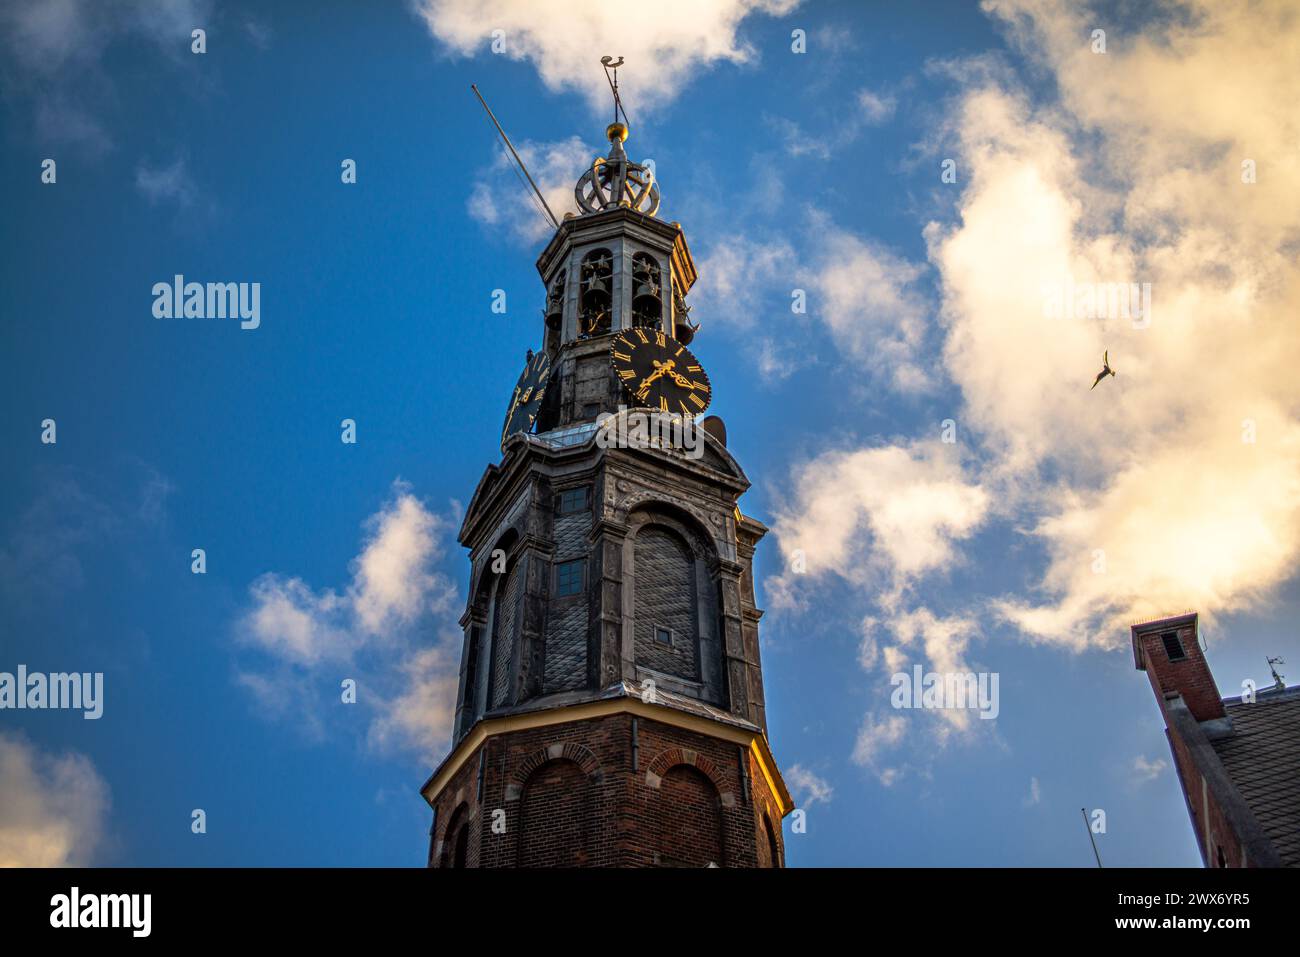 Sali in cima a una vecchia chiesa di Amsterdam per ammirare viste panoramiche, dove le guglie storiche toccano il cielo in questo iconico paesaggio urbano europeo. Foto Stock